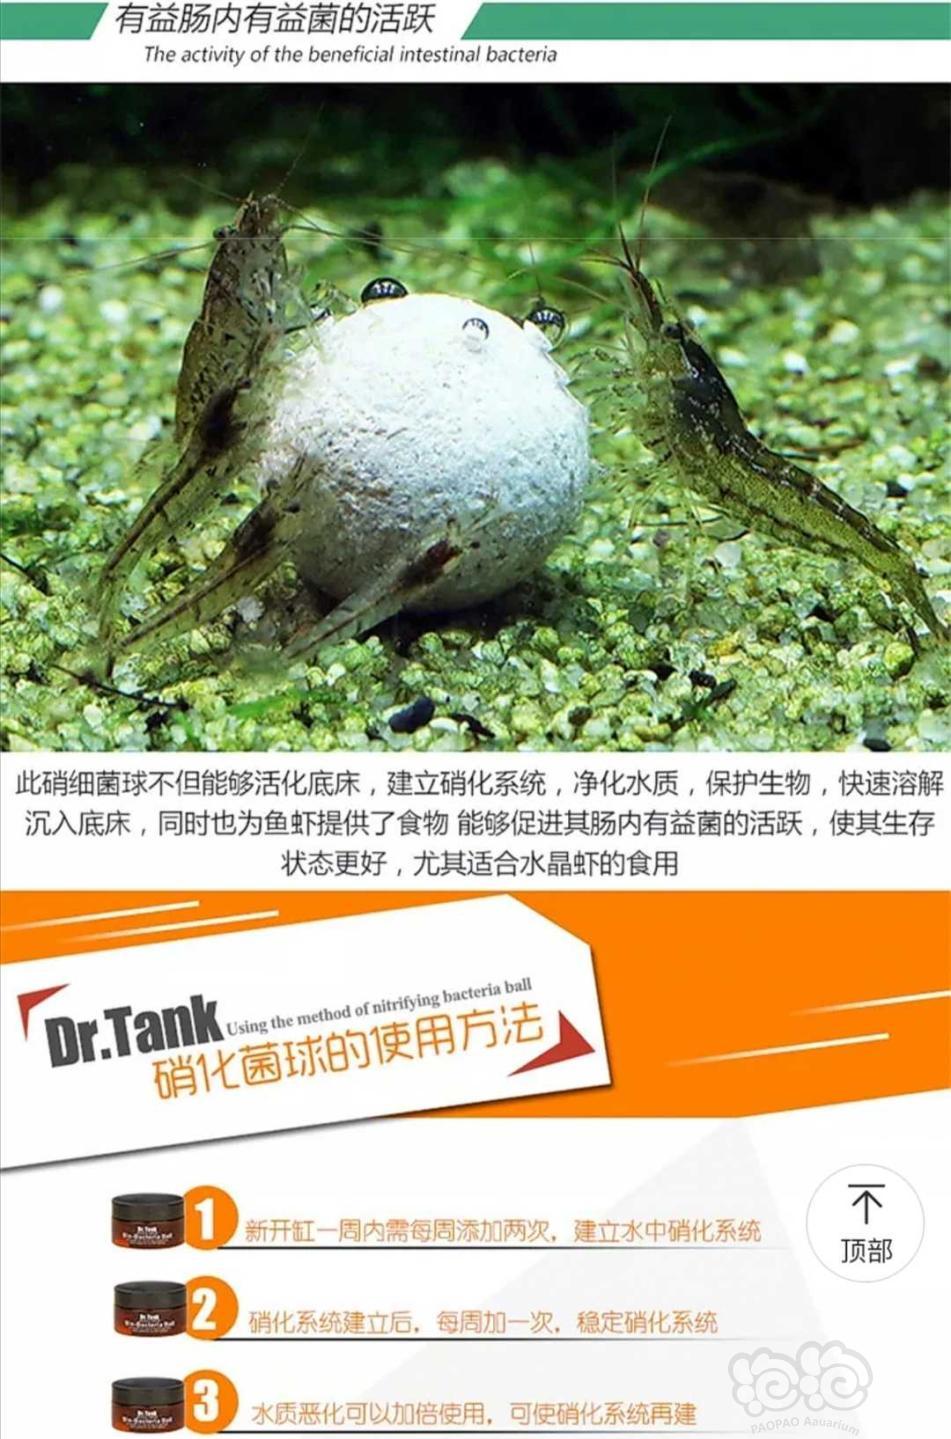 【用品】2019-11-05#RMB拍卖坦克二代硝化细菌球三粒装*3盒-图2